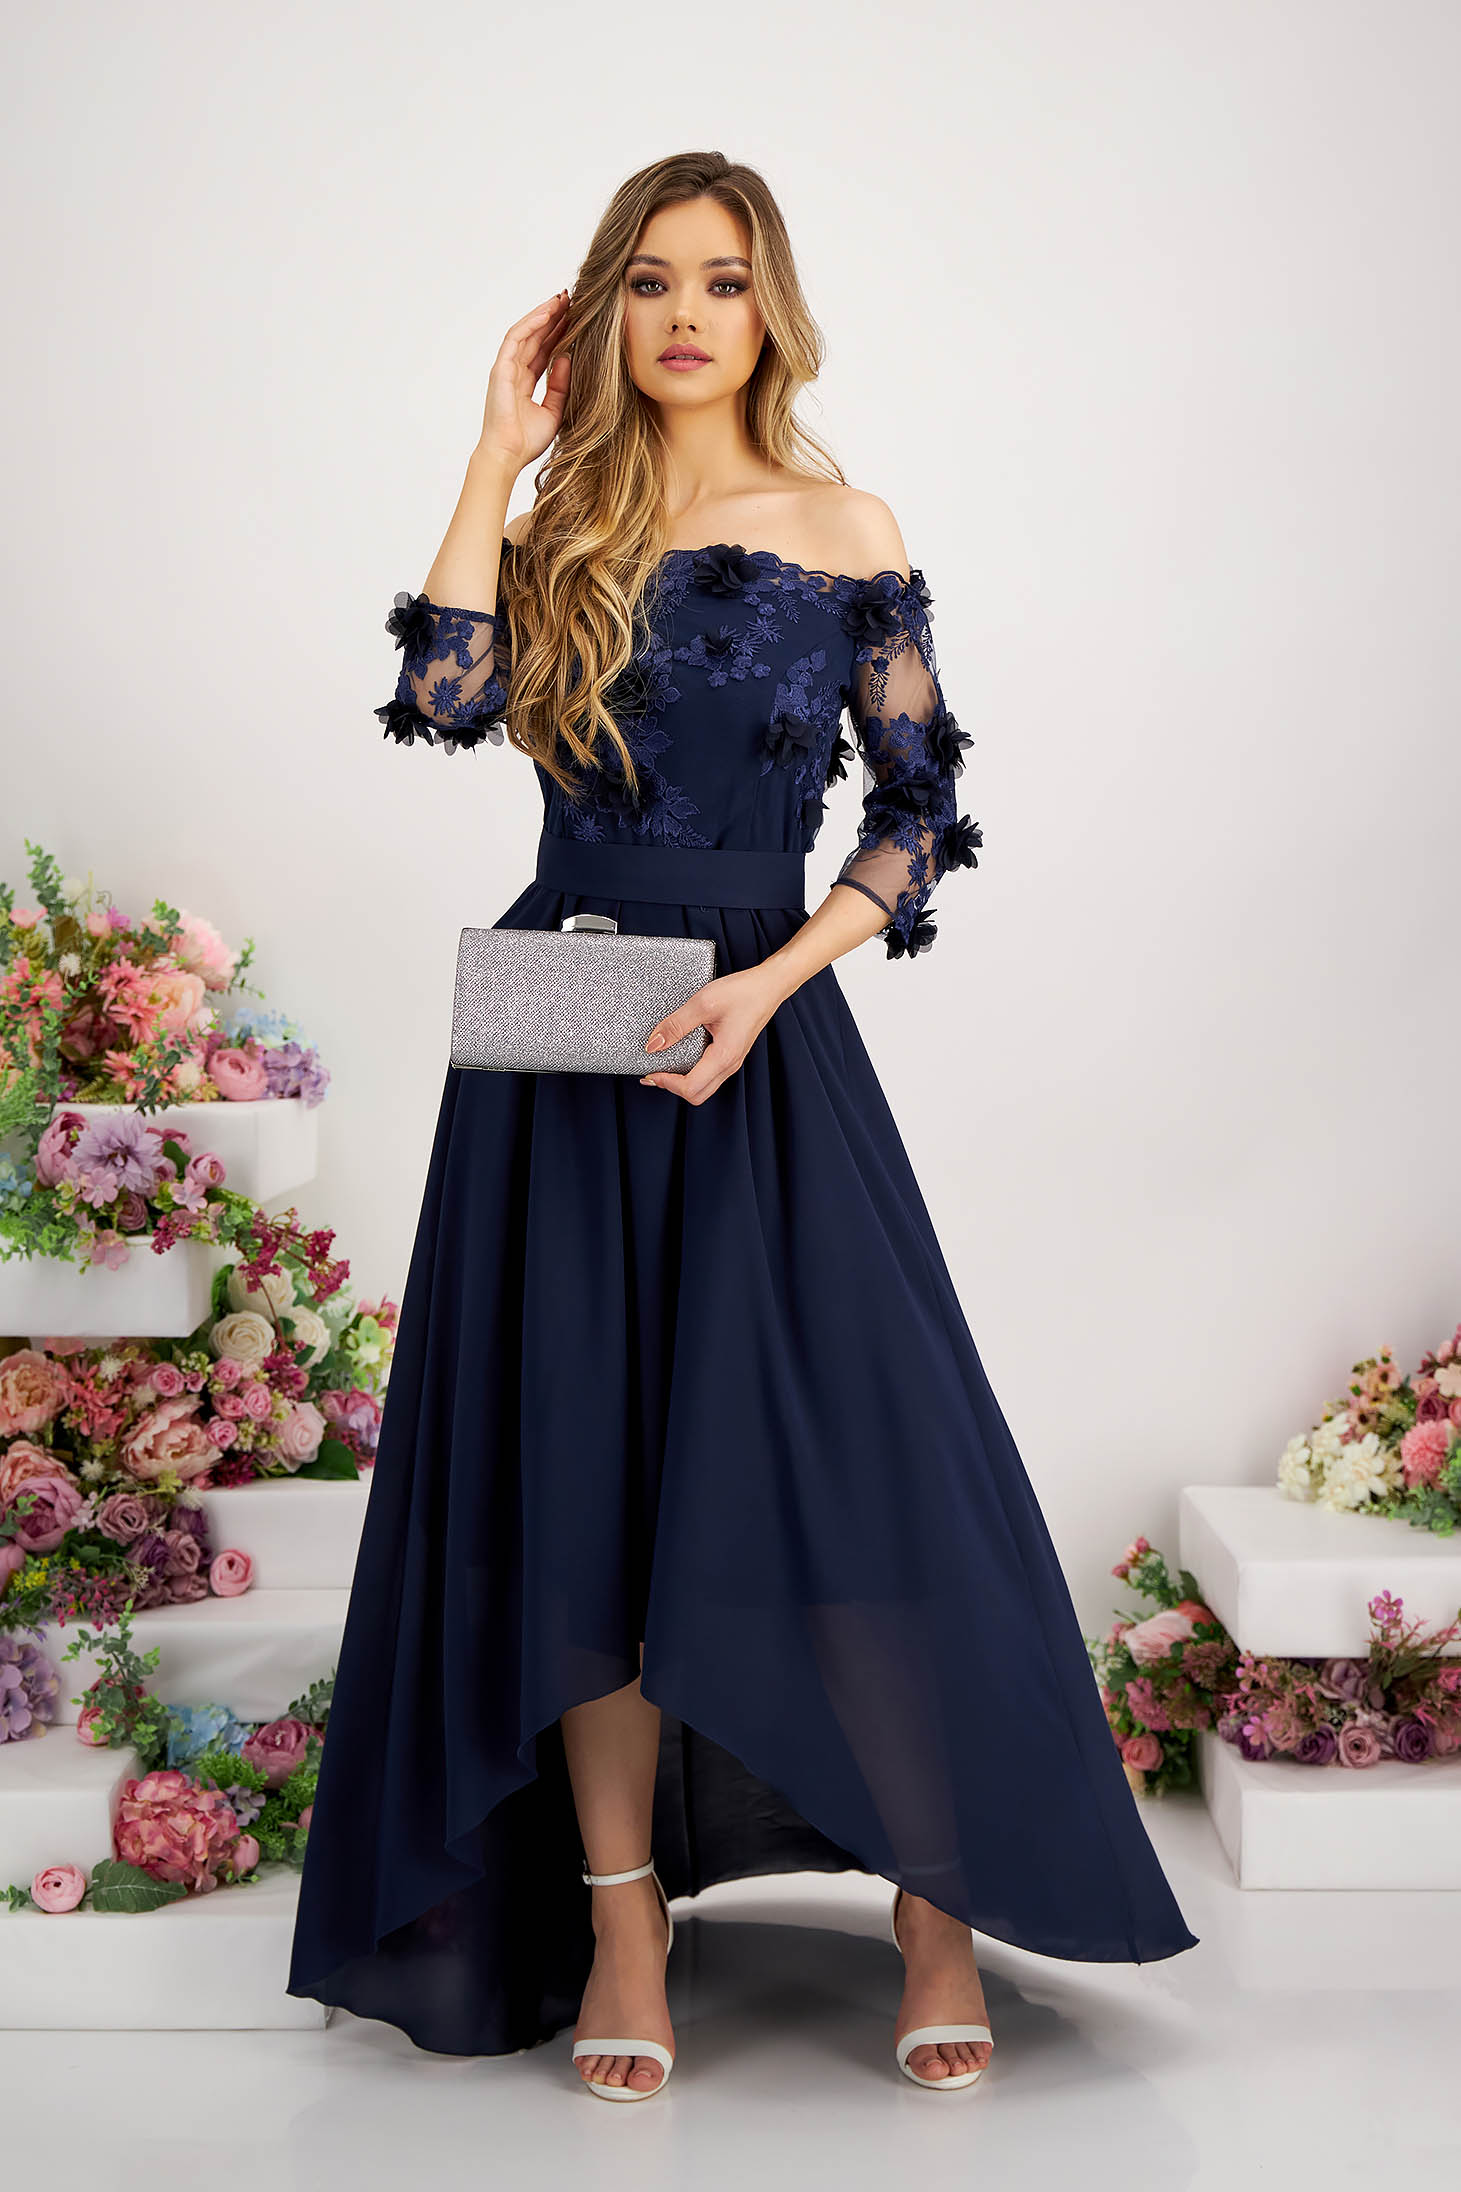 Asymmetric Navy Blue Chiffon and Lace Dress - StarShinerS